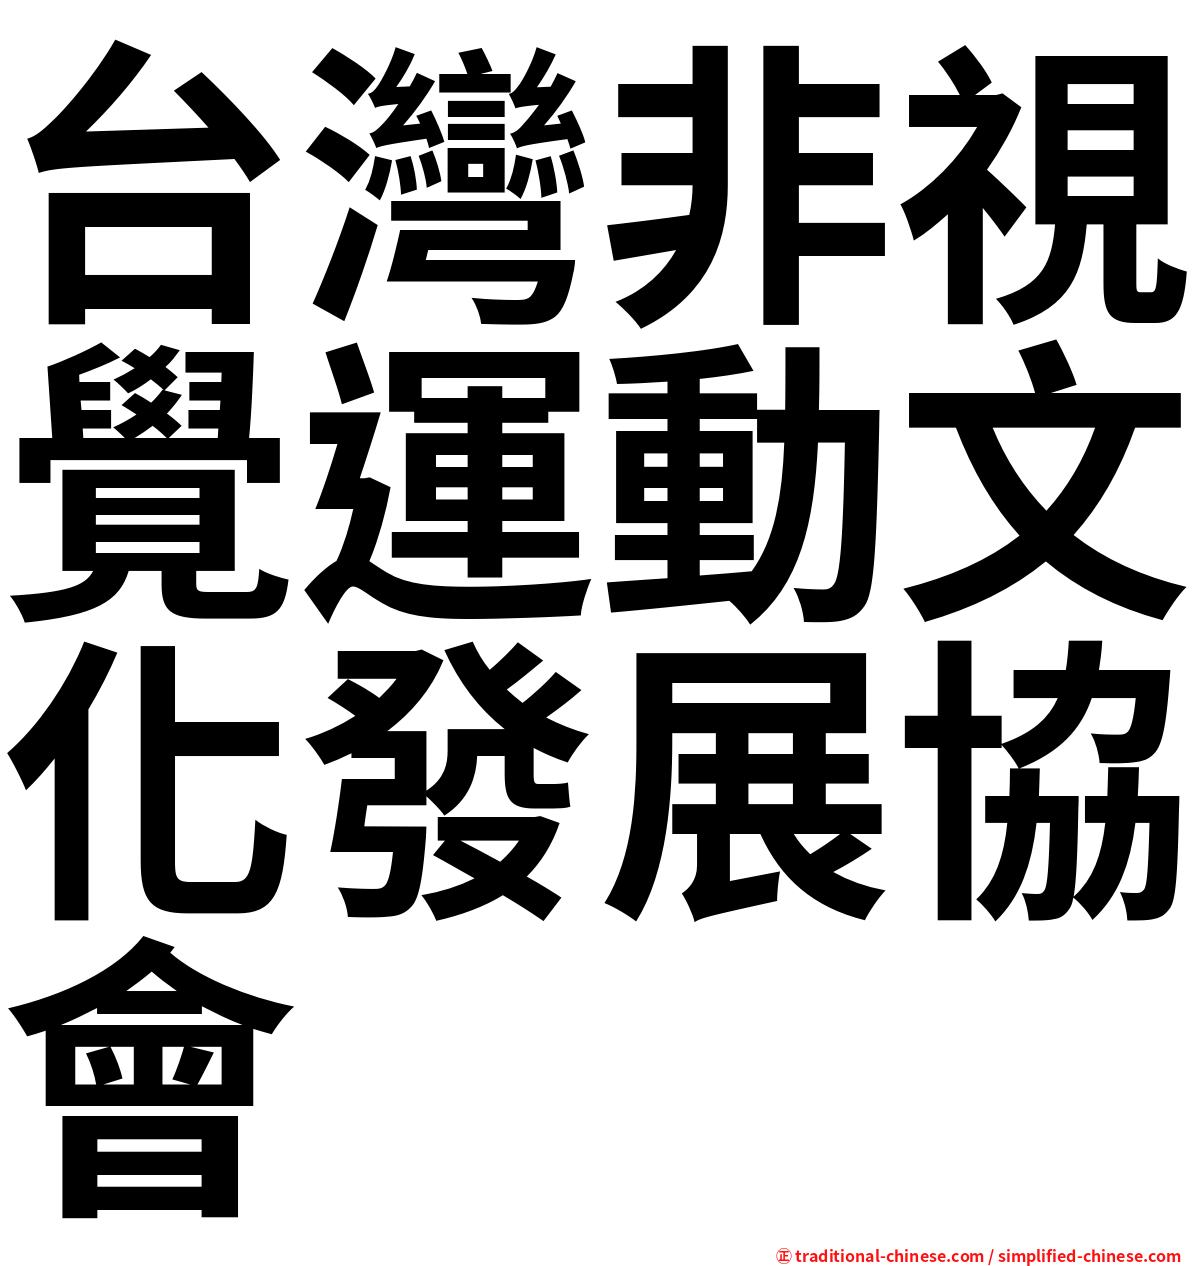 台灣非視覺運動文化發展協會